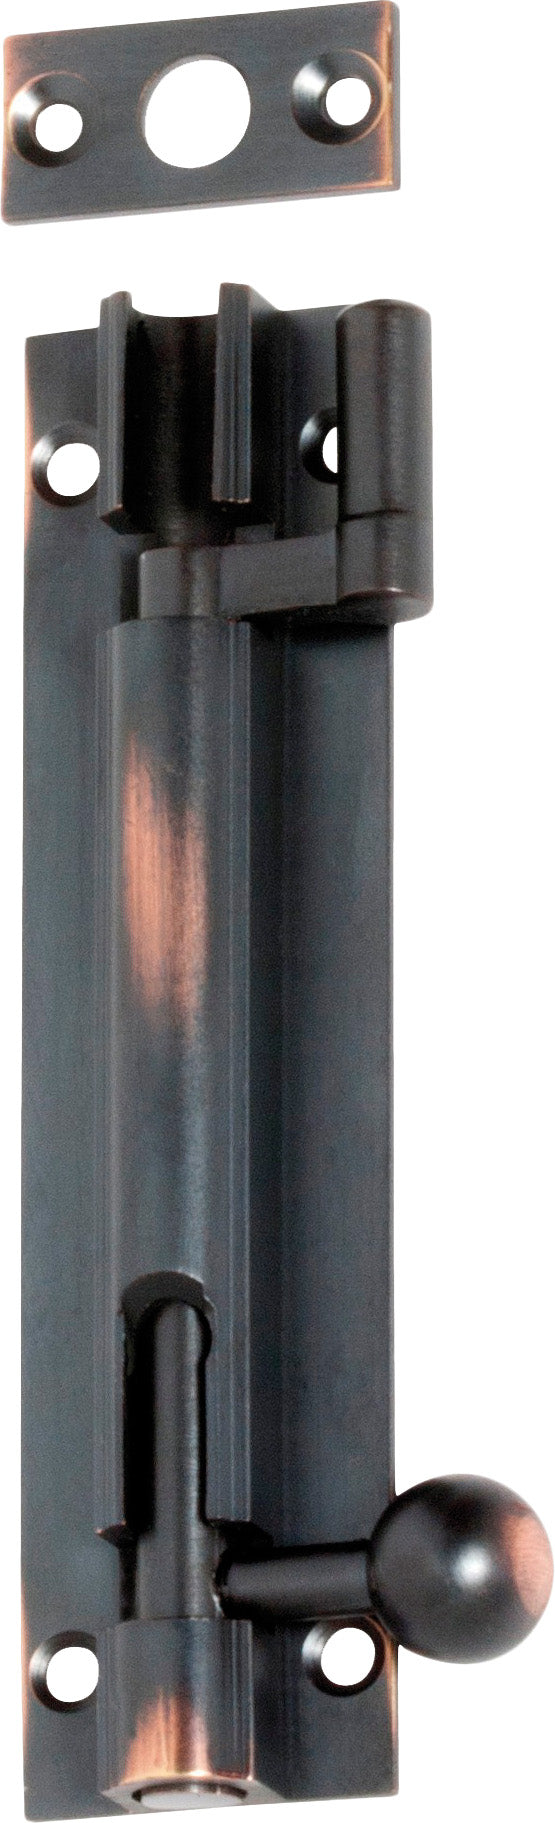 Barrel Bolt Offset Antique Copper L100xW25mm